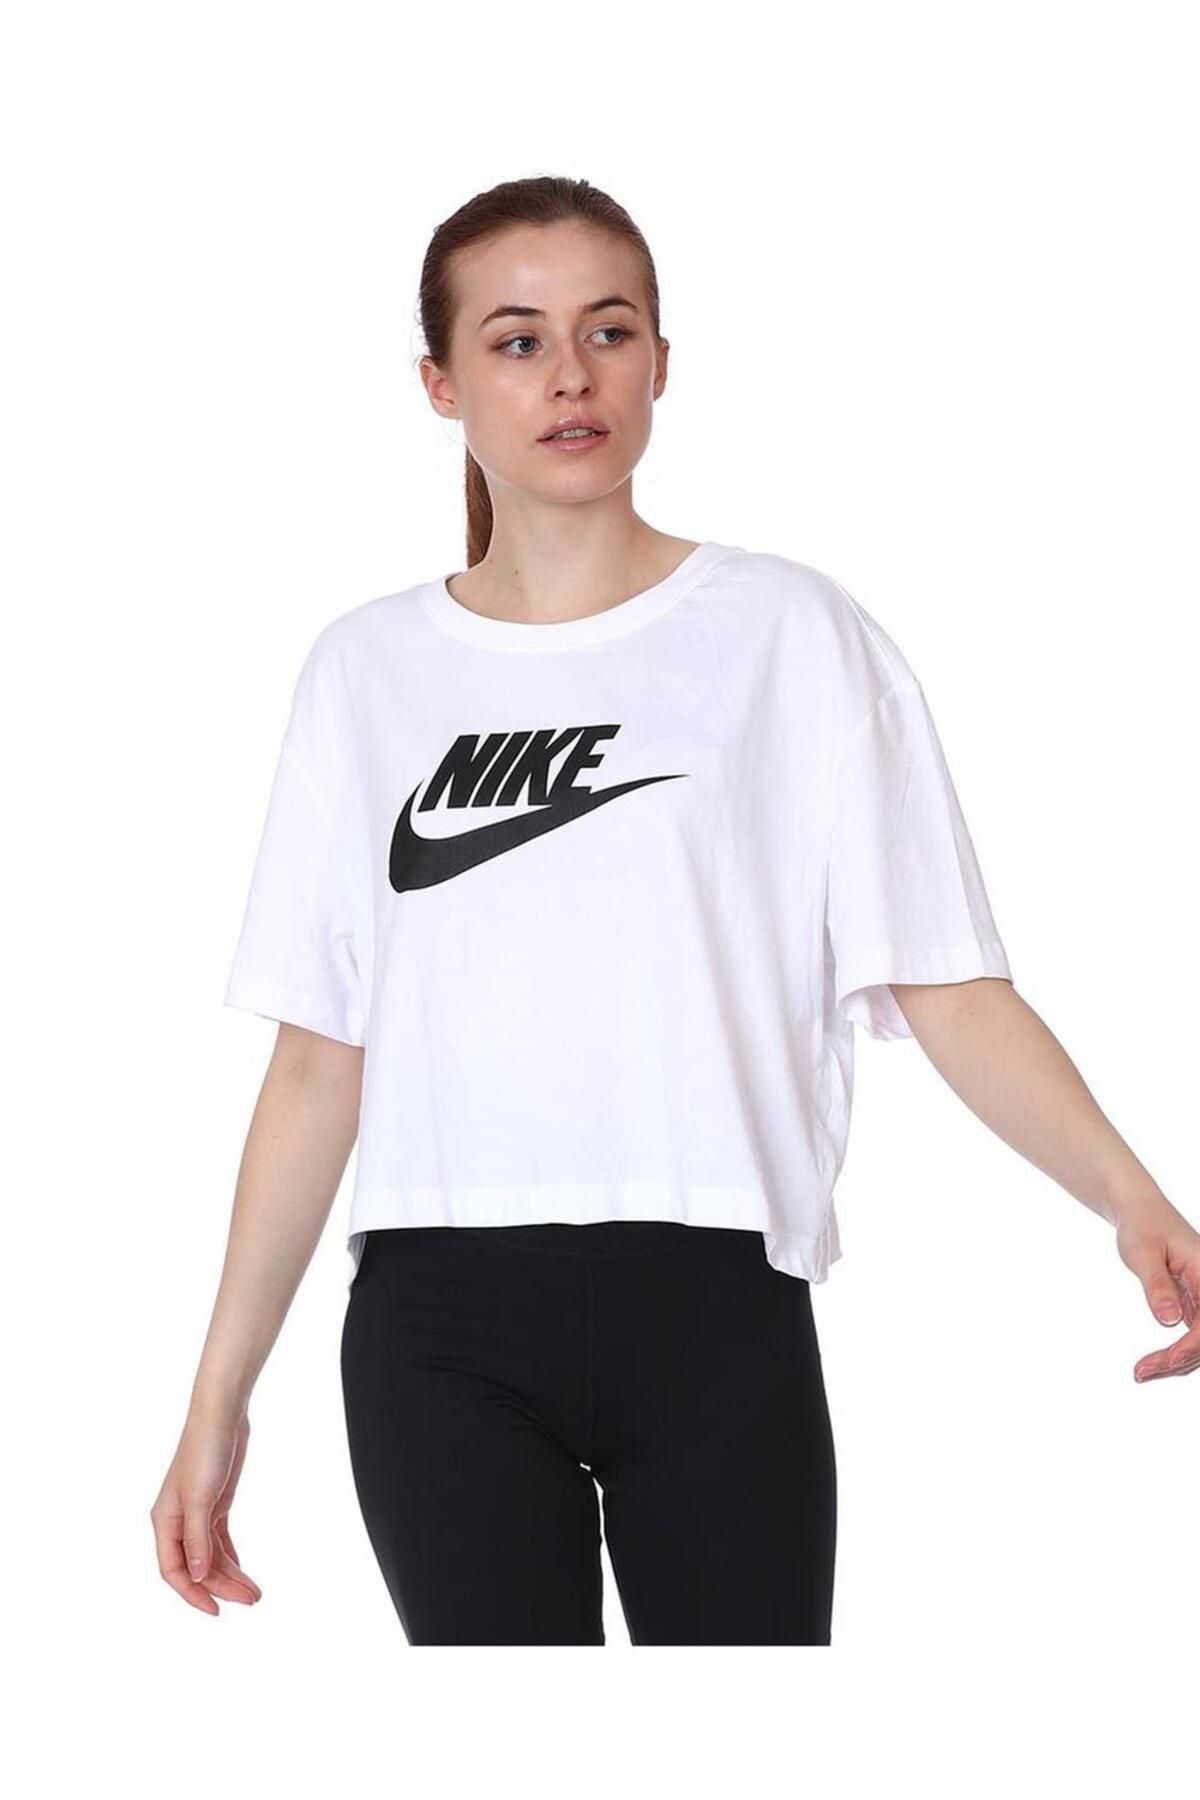 Nike Nstee Essntl Crp I?cn Ftr Kadın Tişört Bv6175-100